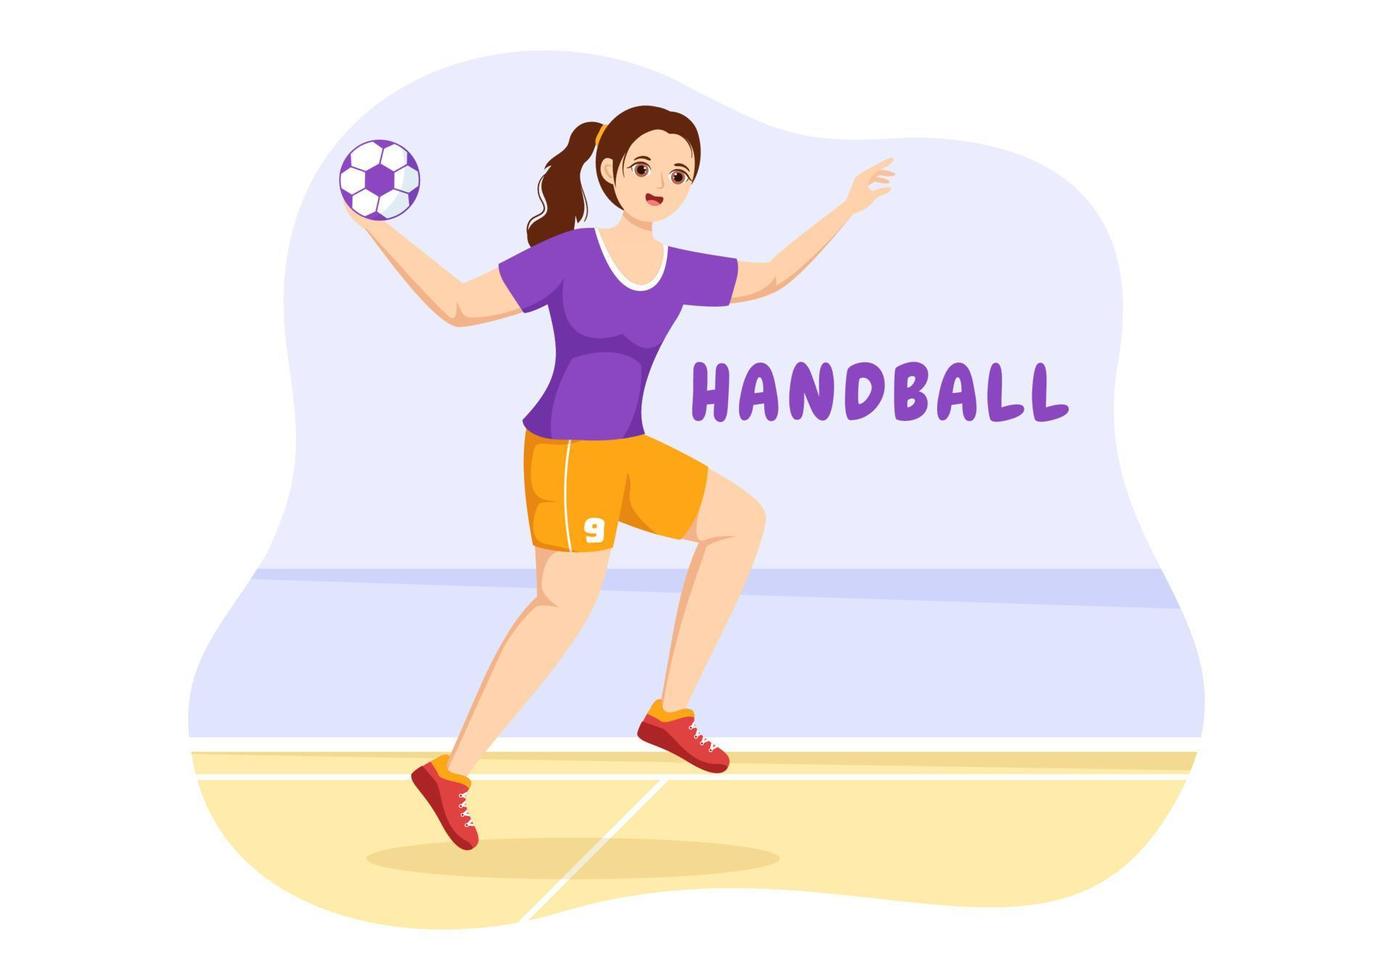 illustration de handball d'un joueur touchant le ballon avec sa main et marquant un but dans un modèle de dessin à la main de dessin animé plat de compétition sportive vecteur